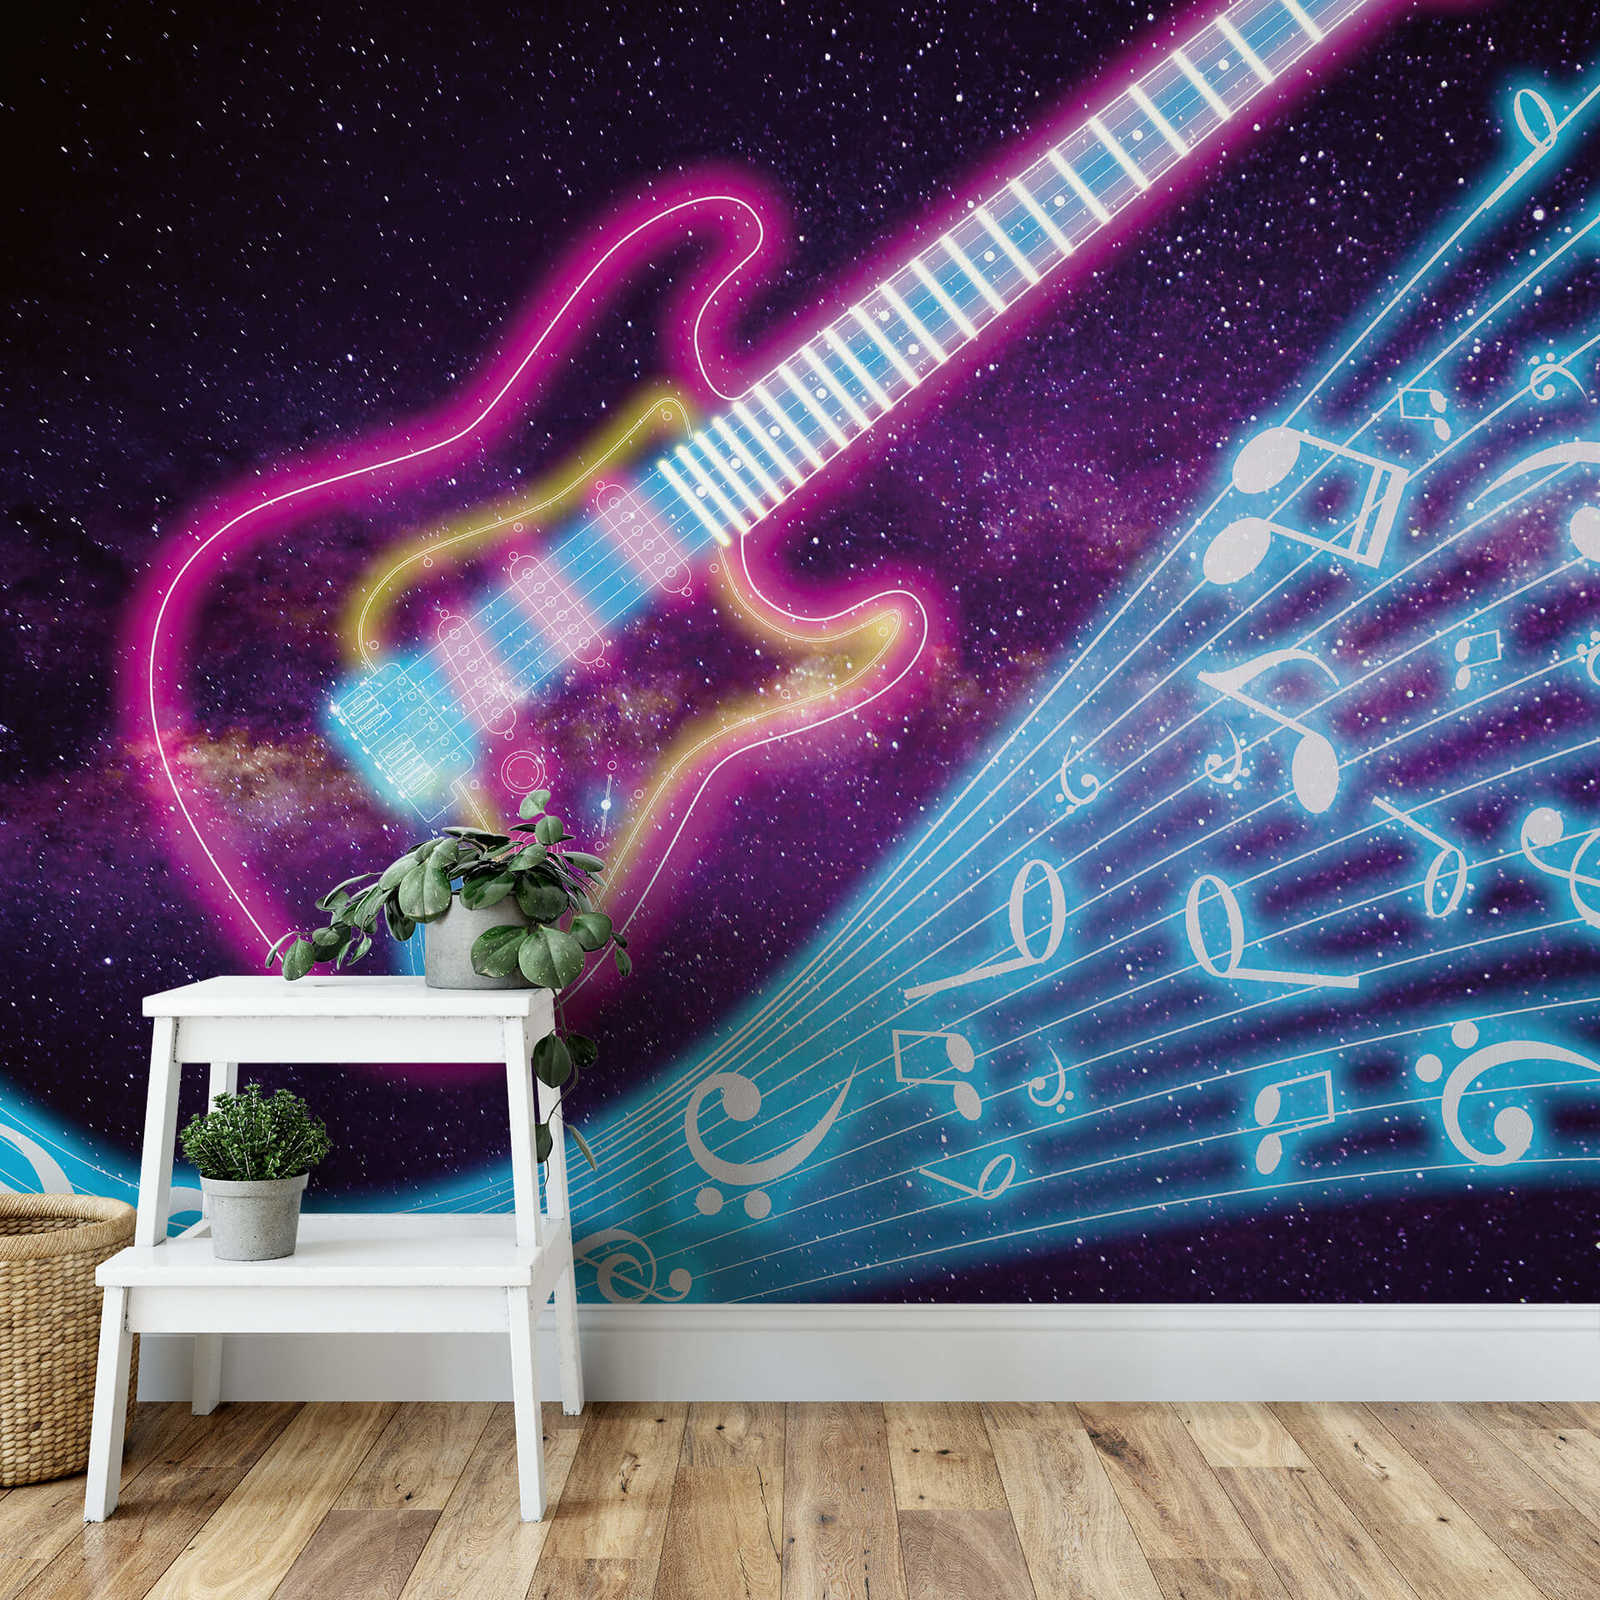             Papier peint musique avec galaxie & design néon - violet, turquoise
        